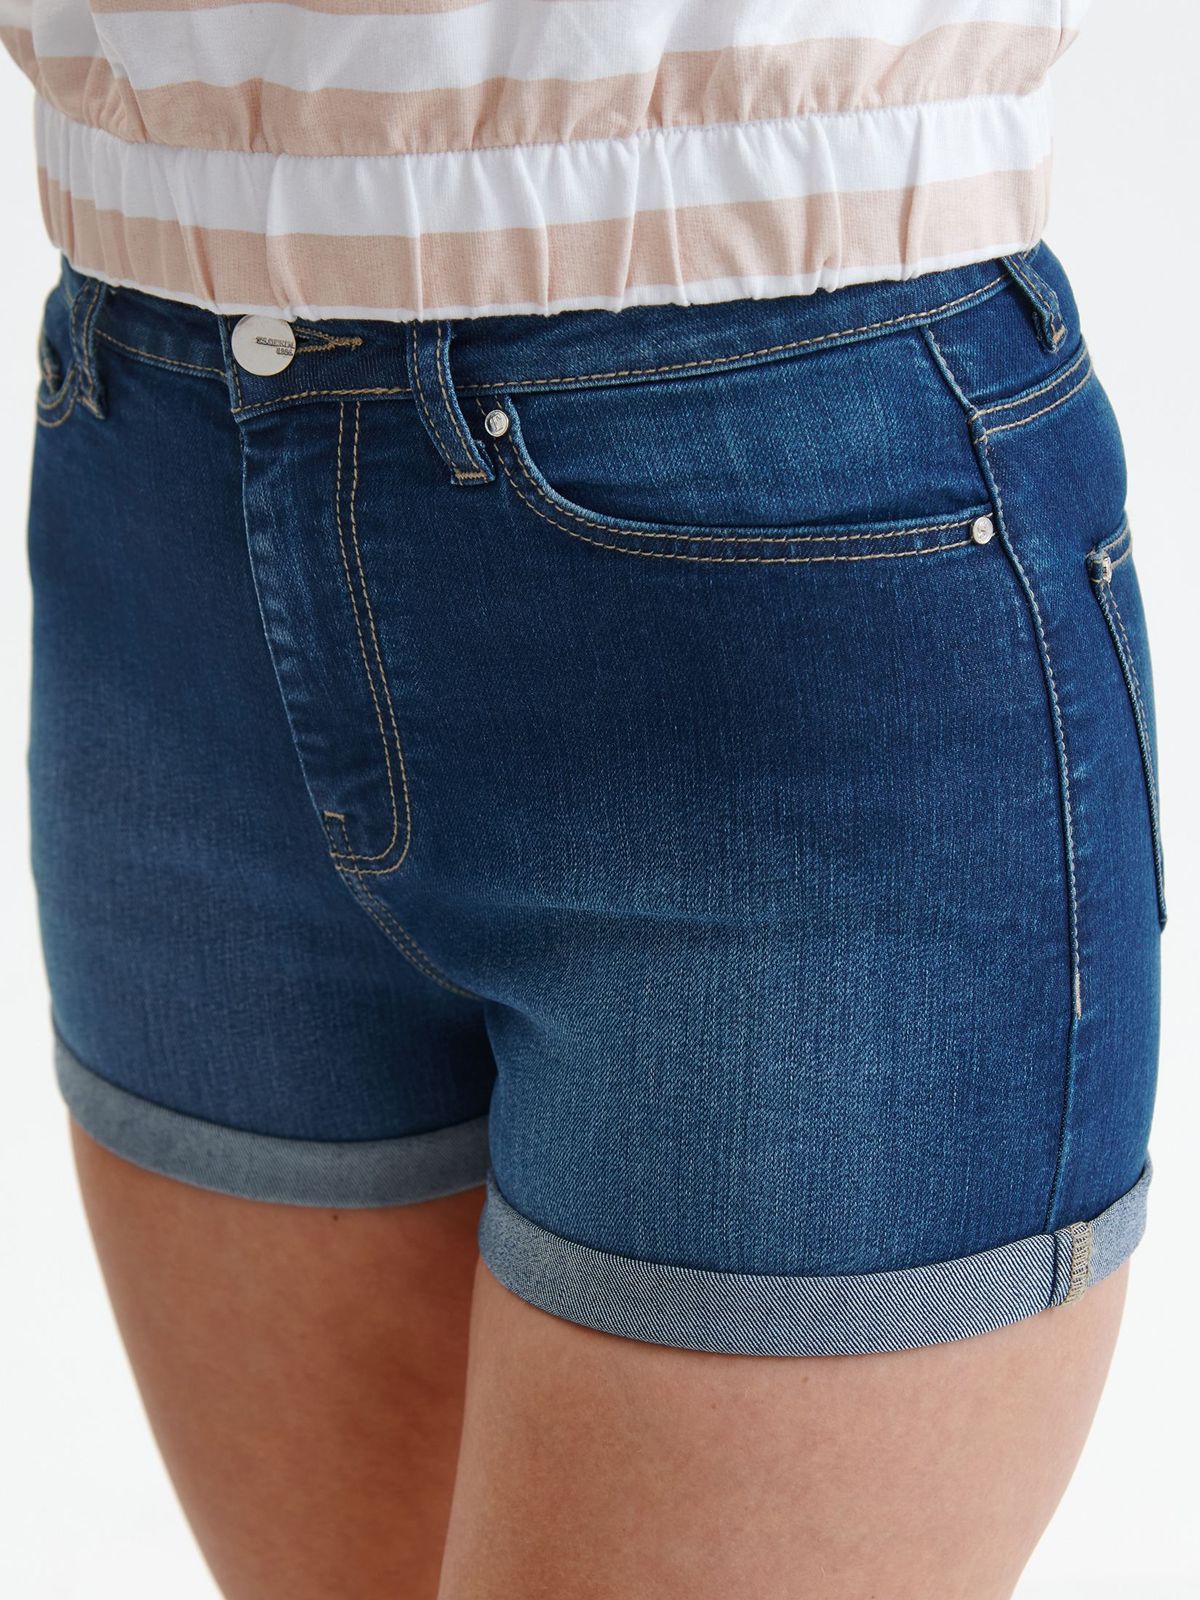 Pantalon scurt de blugi albastru cu talie normala si buzunare - Top Secret 4 - StarShinerS.ro